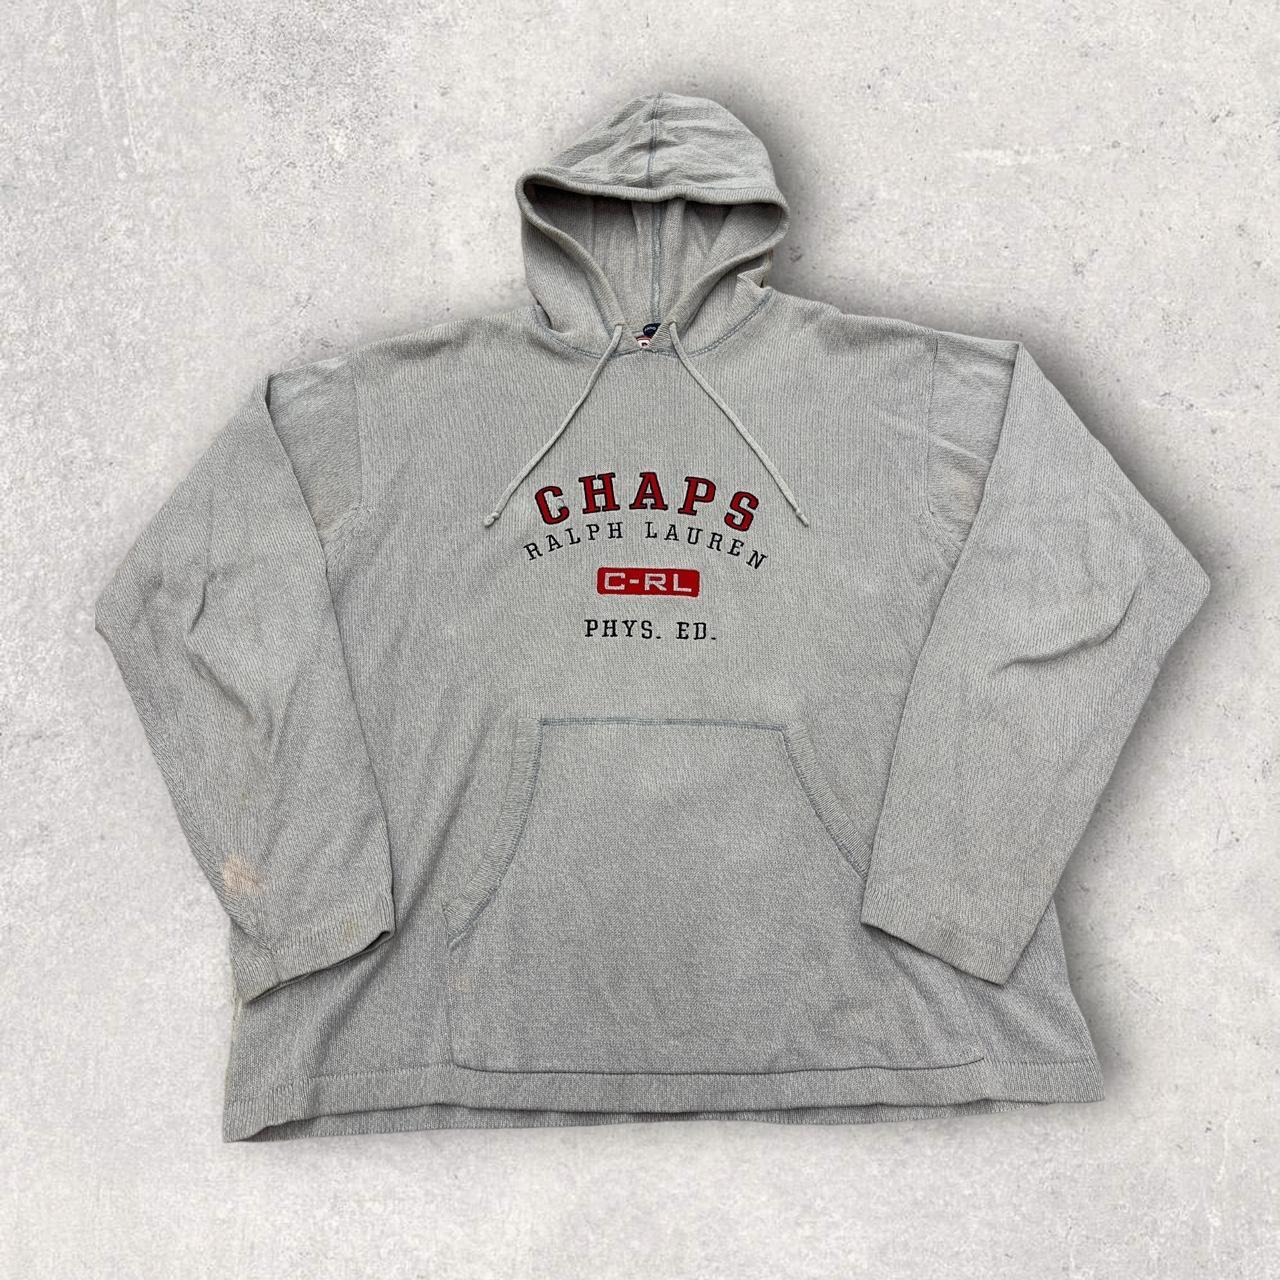 Vintage Chaps Ralph Lauren hooded shirt in grey.